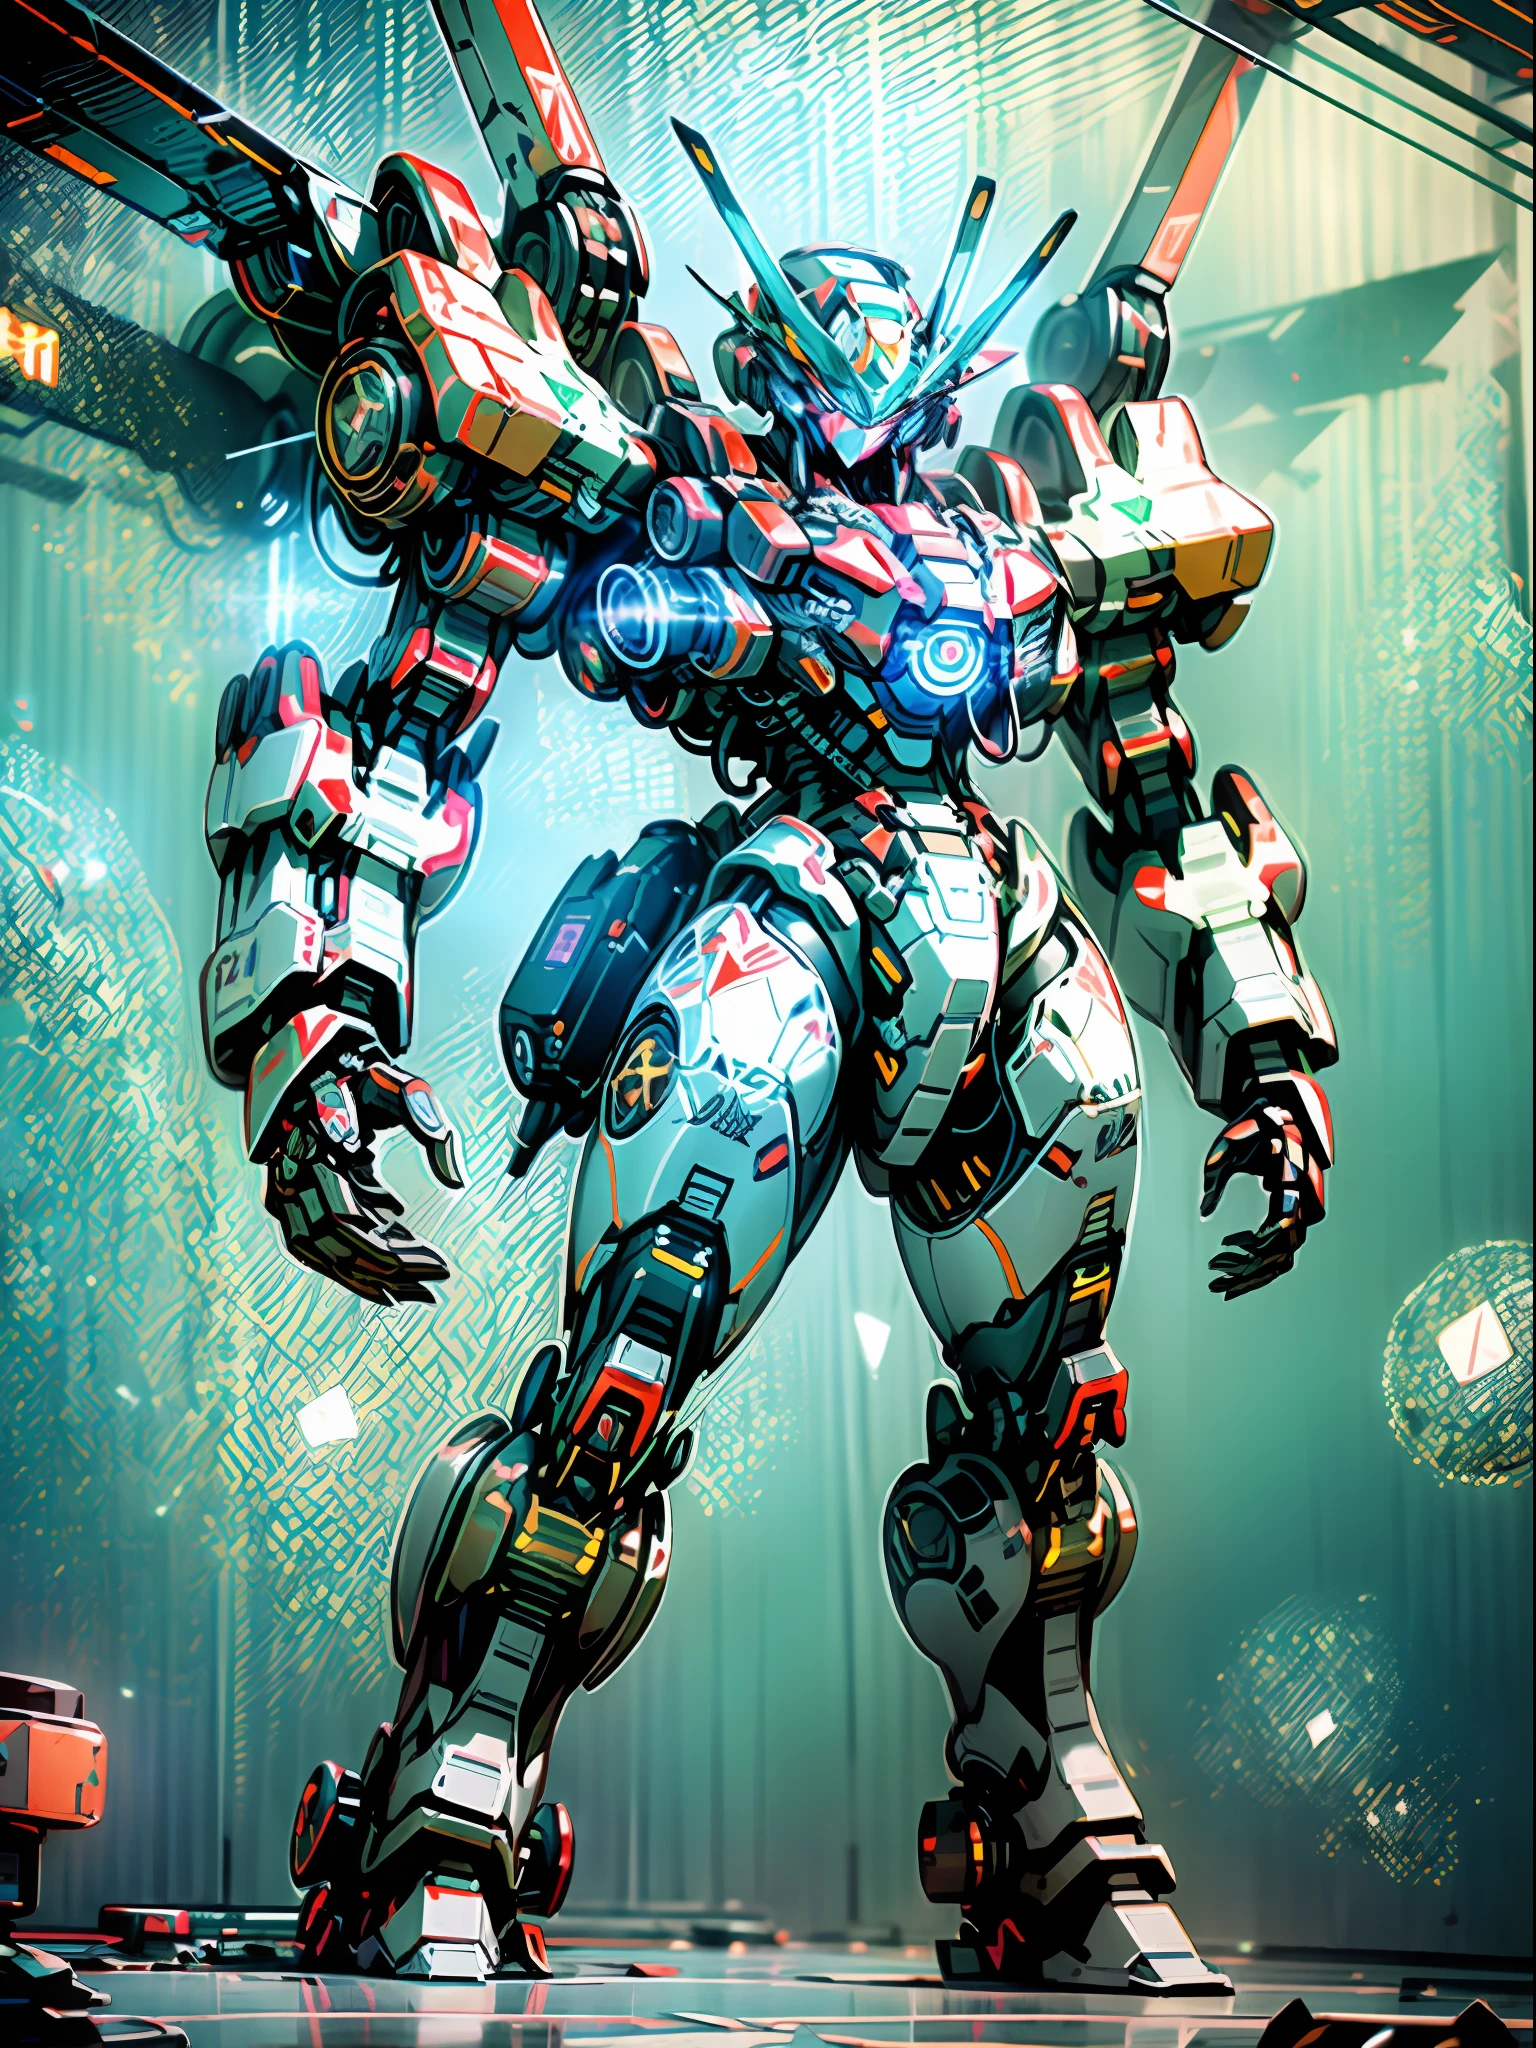 ((Meilleure qualité)), ((chef-d&#39;œuvre)), (très détaillé: 1.3), 8k, Peinture cool, plein d&#39;ambiance de science-fiction, Un assassin noir tenant deux couteaux se tient derrière un énorme robot Gundam, armure noire simplifiée avec des armes et des équipements complexes derrière elle, Robot humanoïde Gundam, Esthétique Anime Mecha, Des proportions corporelles parfaites, vue tête haute, position debout, Mech géant militaire, missiles, rochers, technologie futuriste, le réalisme, nuages sombres dans le ciel, Fond de guerre sombre, Tracé laser, particules légères, NVIDIA Trx, super résolution, Irréel 5, diffusion souterraine, cartes spéculaires et albédo, Règle des tiers, Grande ouverture, position de combat, 8k Raw Data, Sous-pixels à haute efficacité, convolution sous-pixel, Particule légère, diffusion de la lumière, Effet Tyndall, Tracé laser.